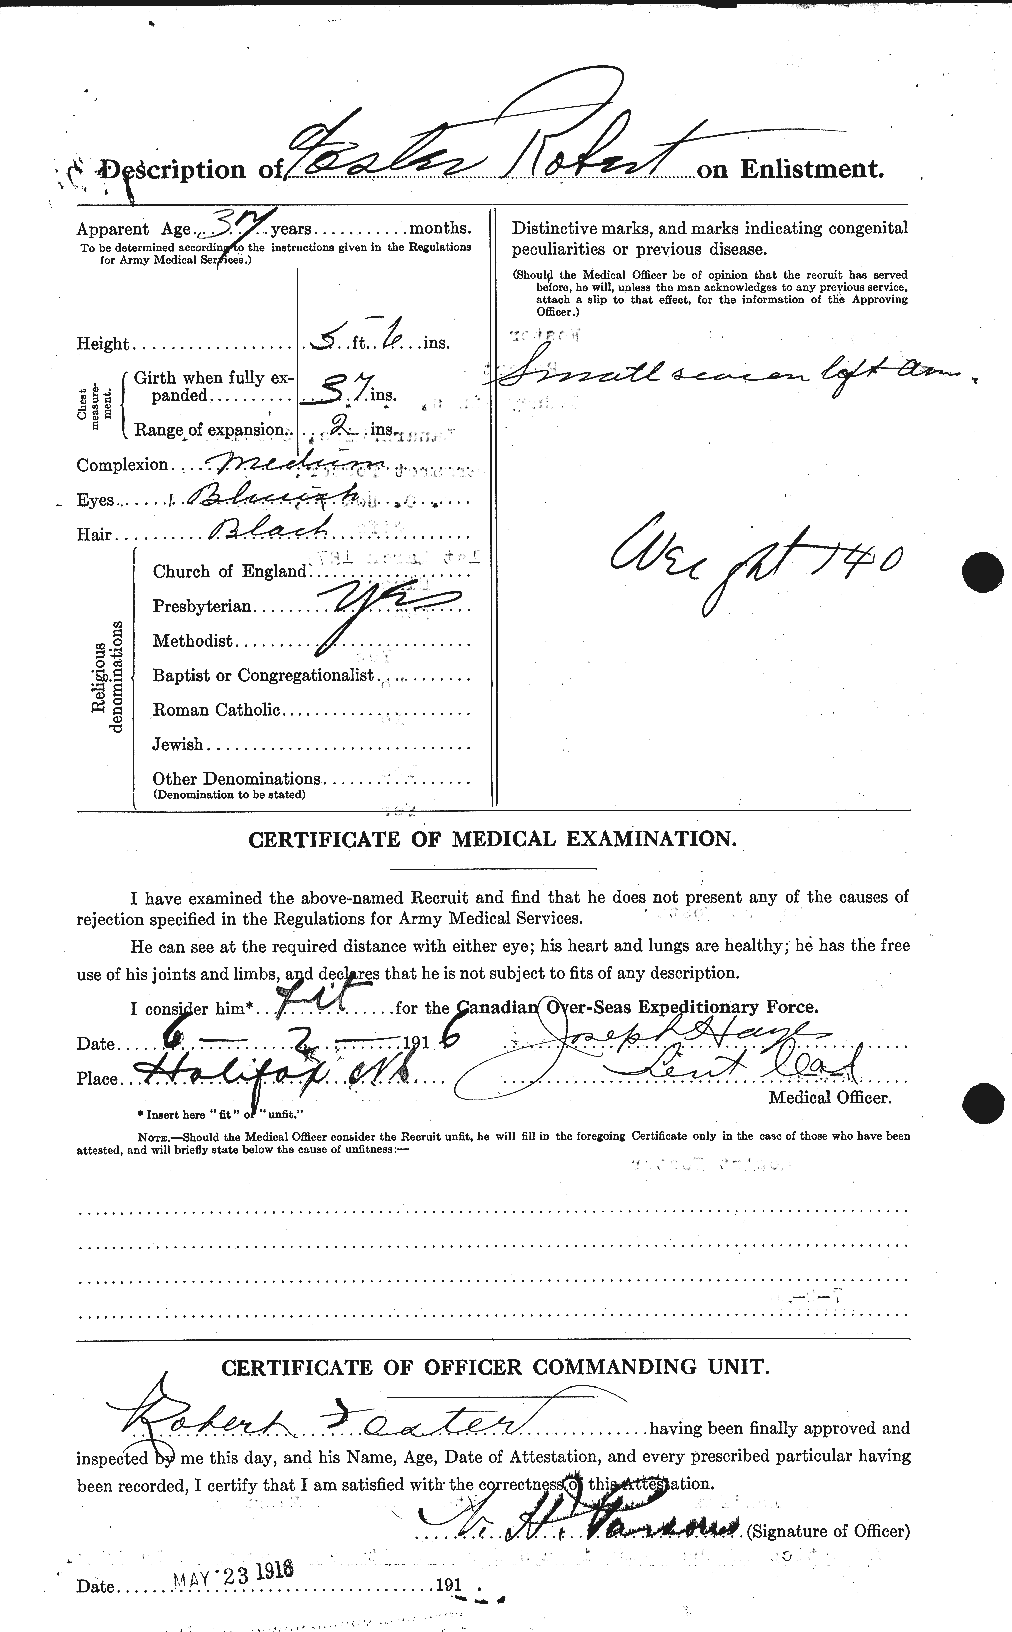 Dossiers du Personnel de la Première Guerre mondiale - CEC 335168b